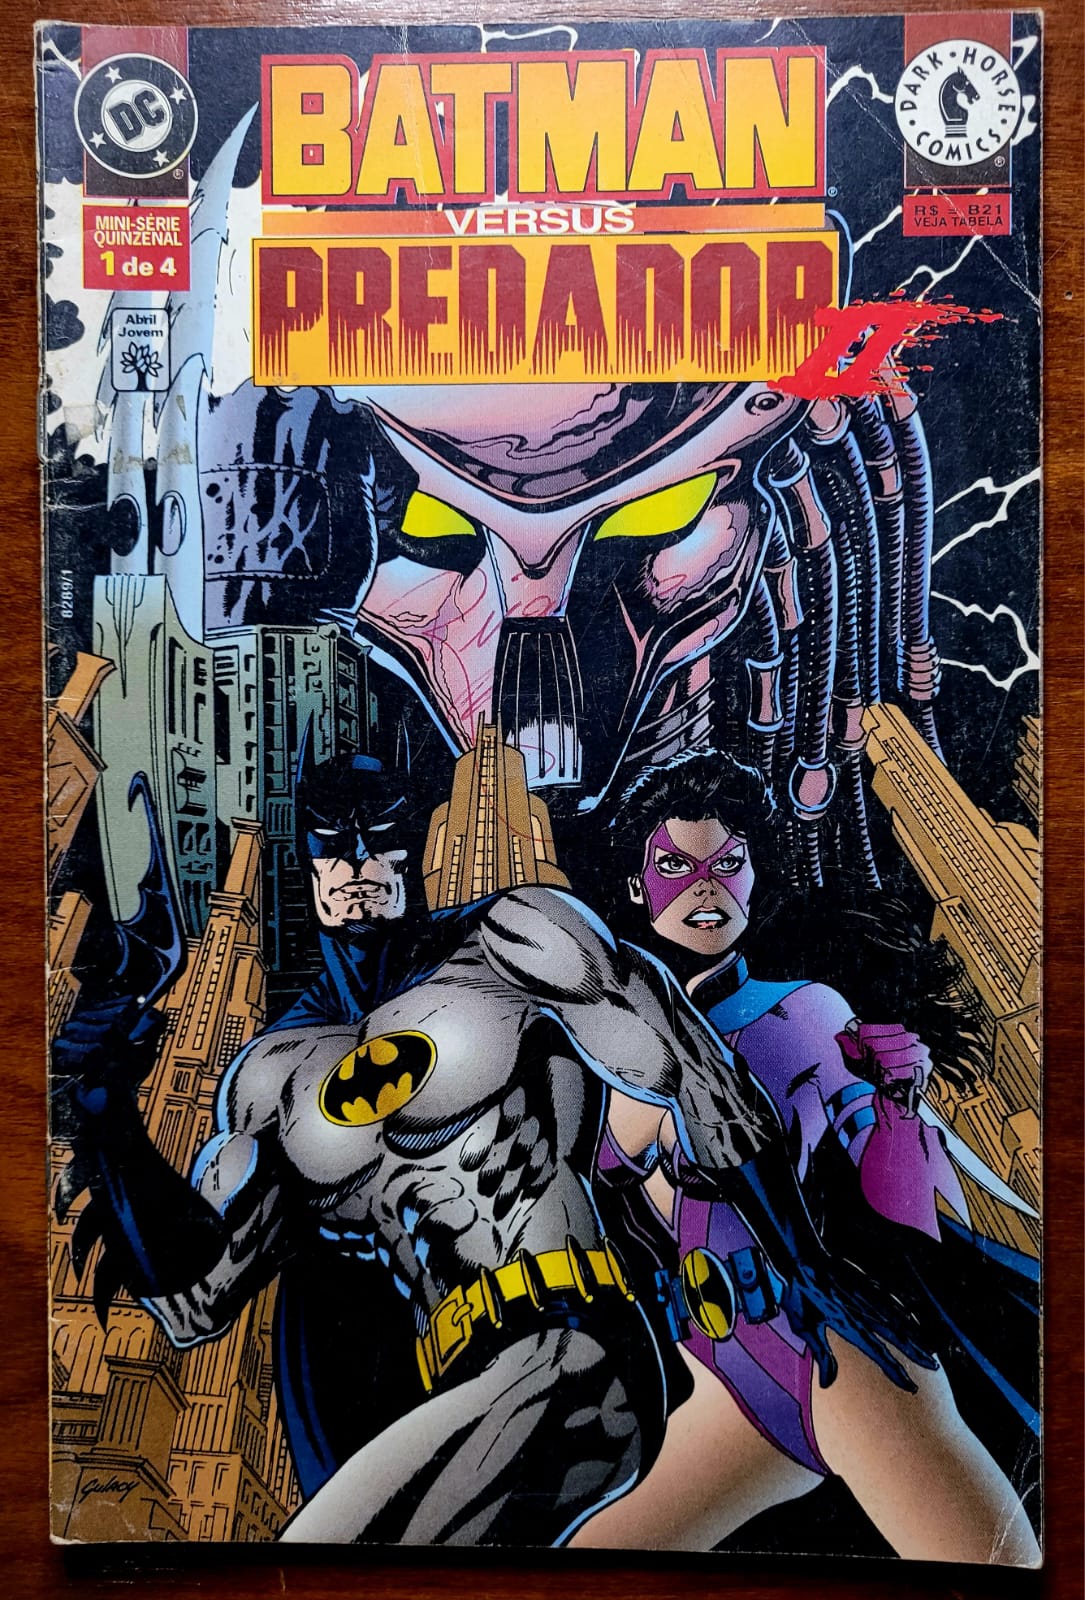 Batman versus Predador II No 1 de 4 A Casa do Colecionador